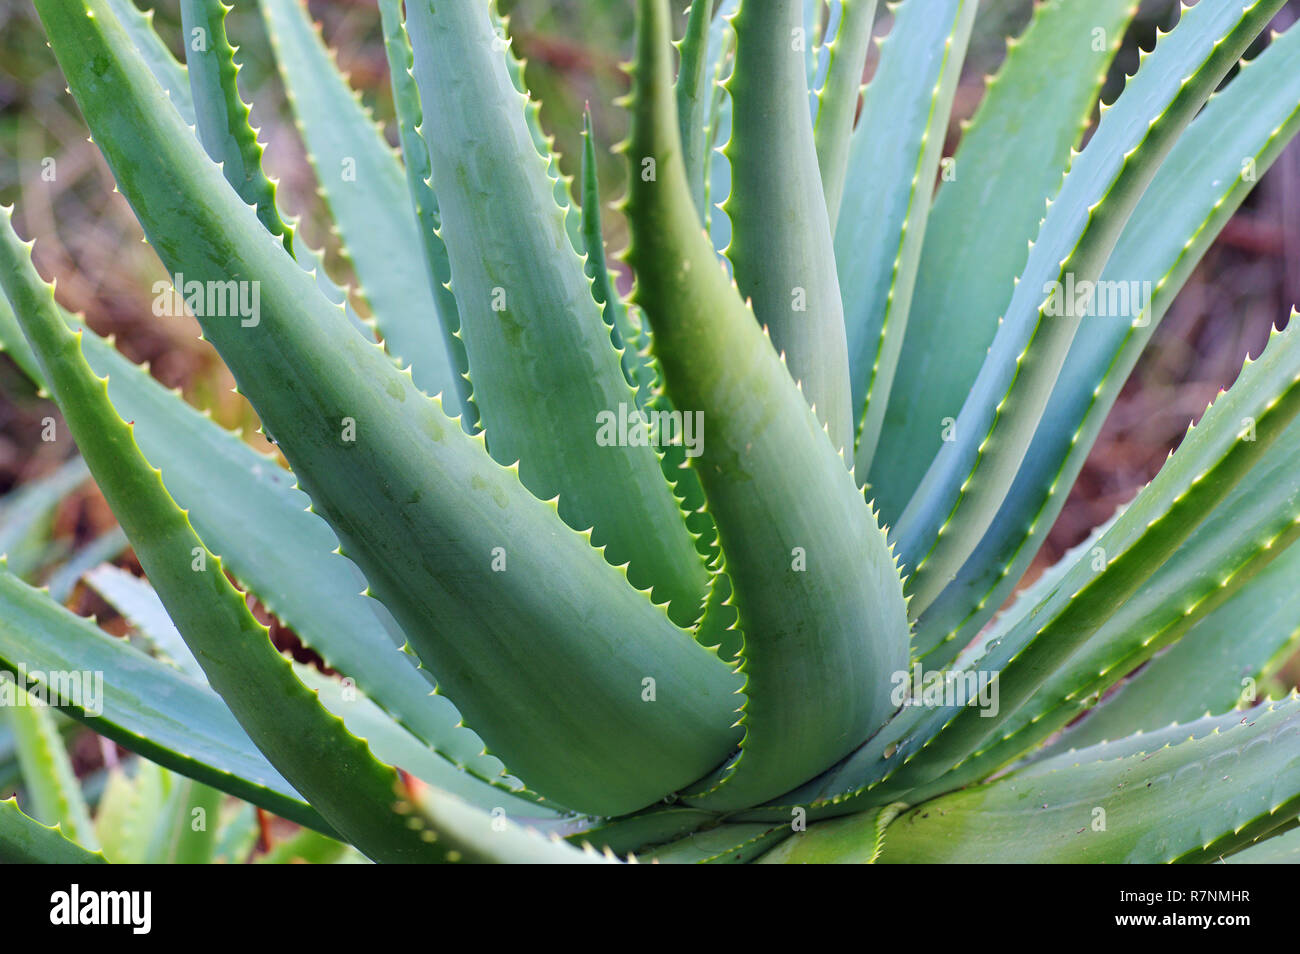 leafes of succulent plant Aloe sp., family Asphodelaceae Stock Photo